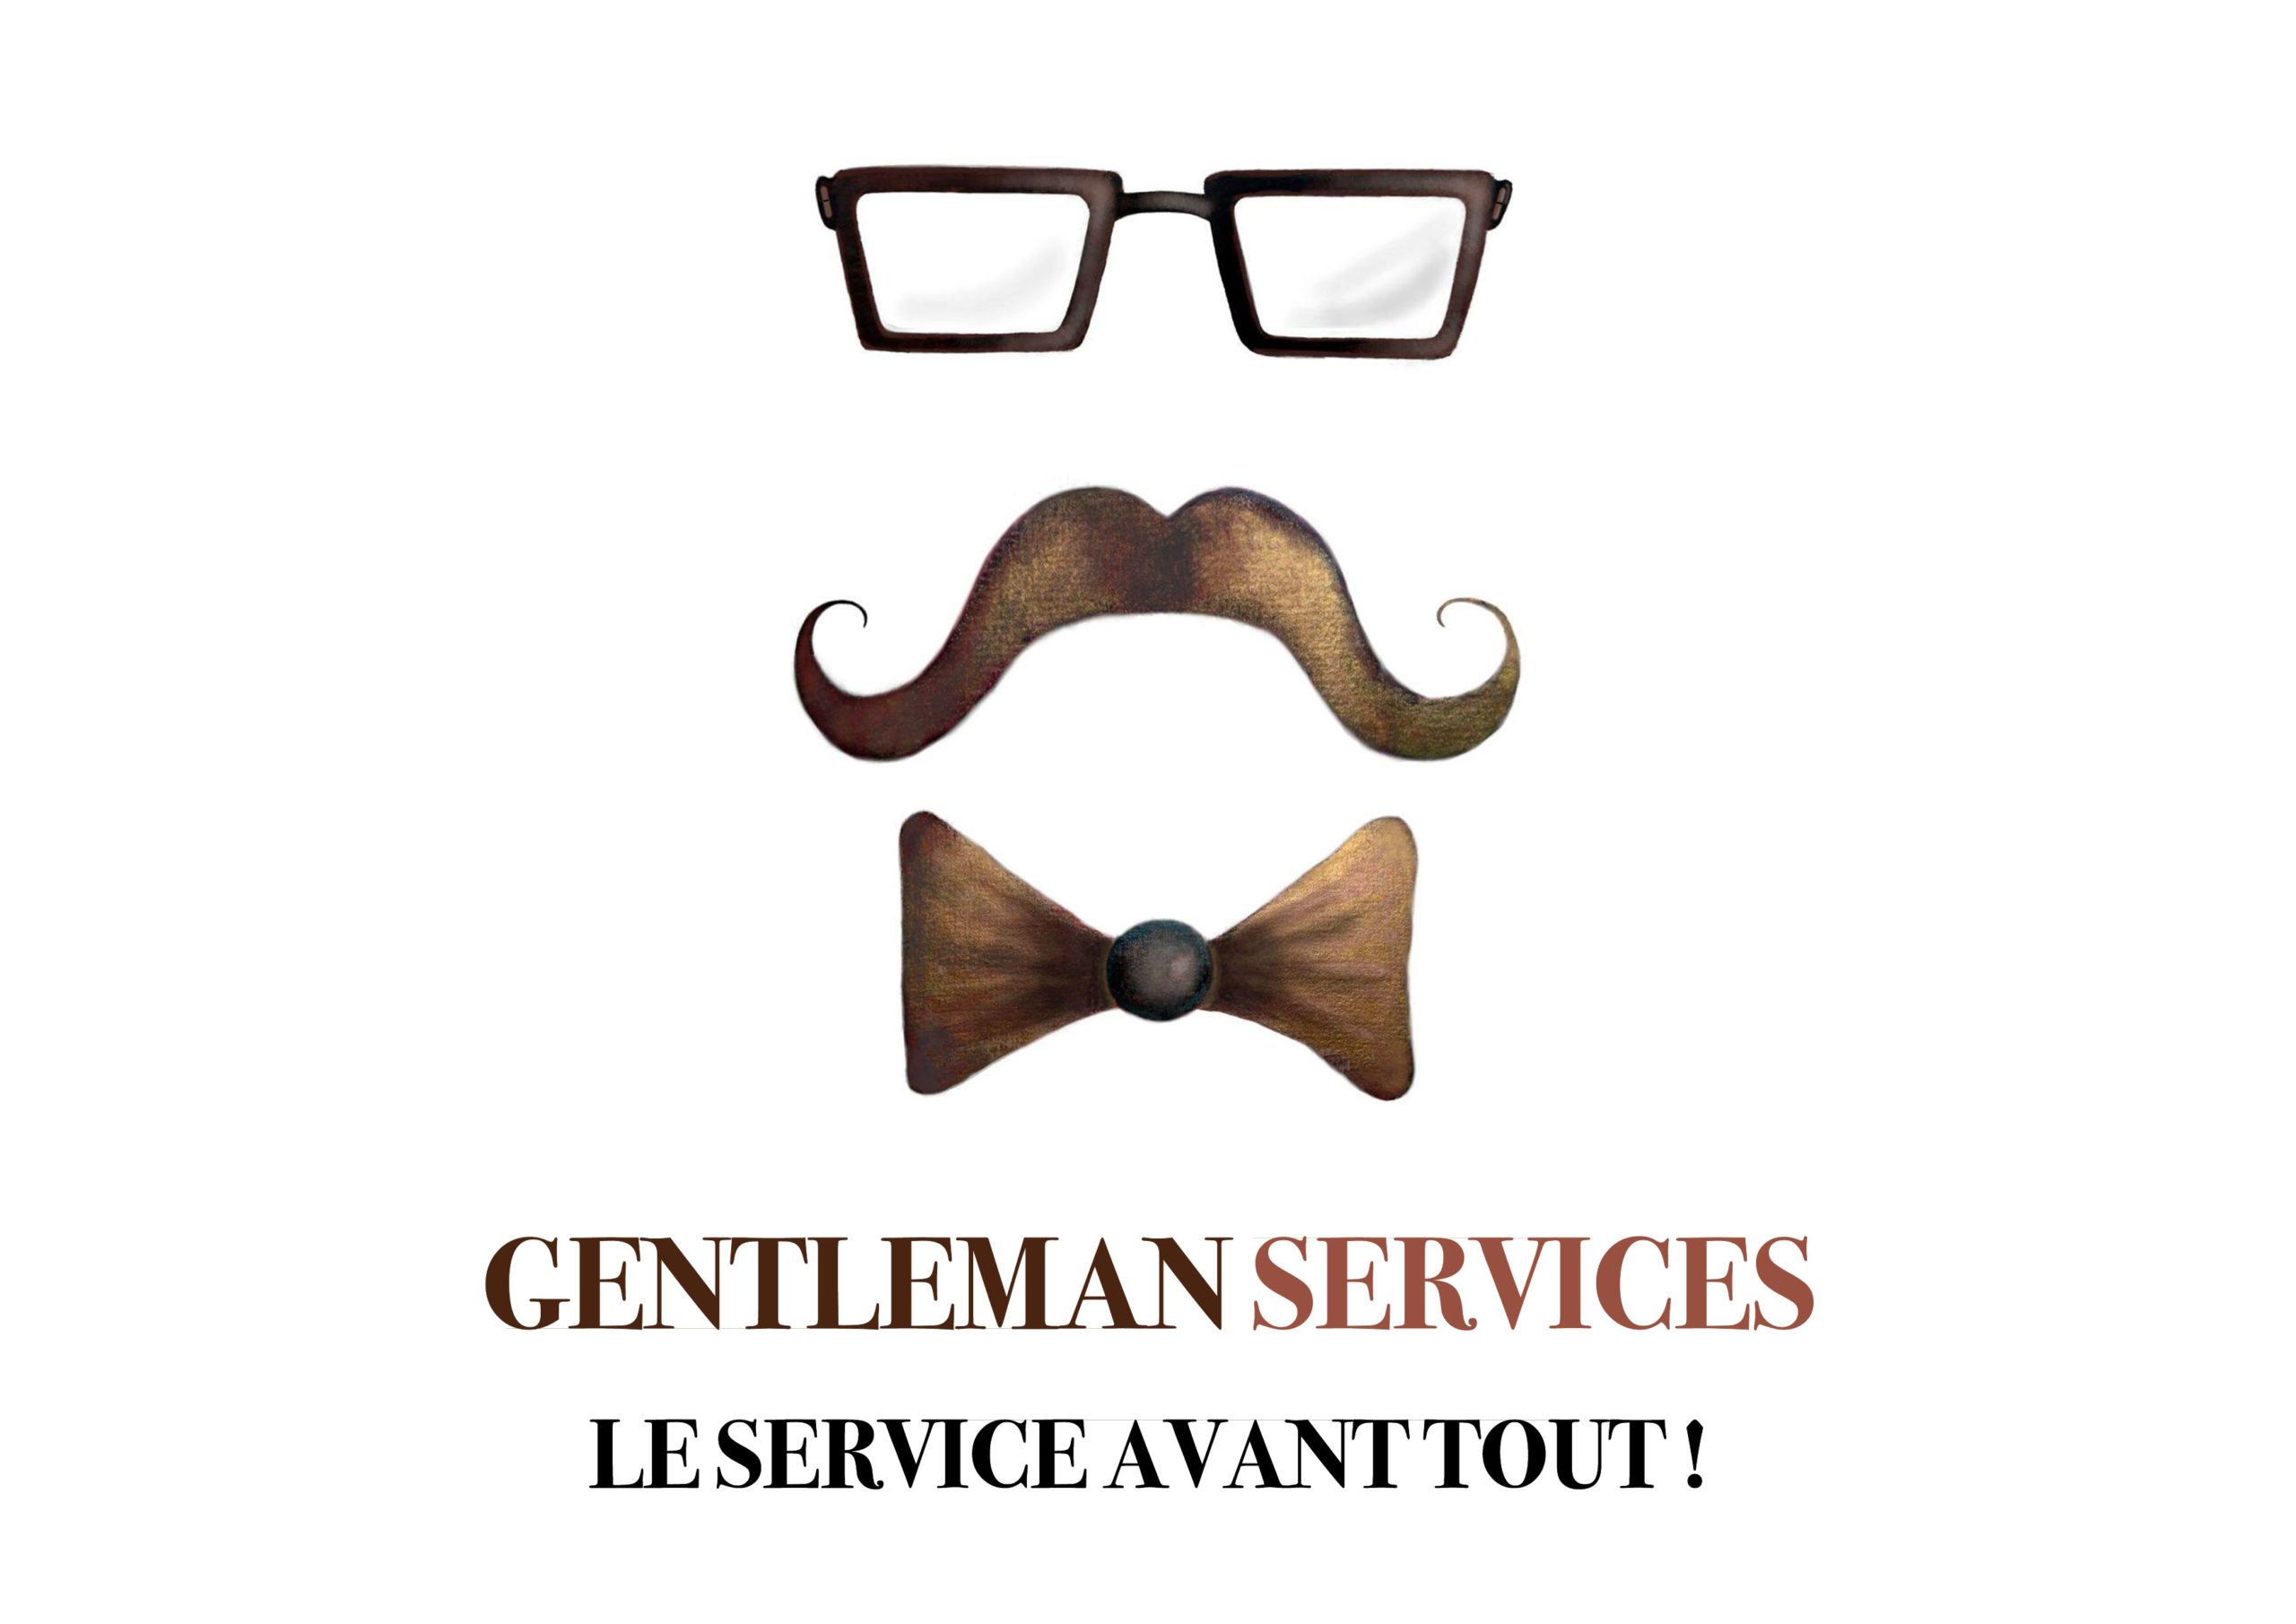 Gentleman Services